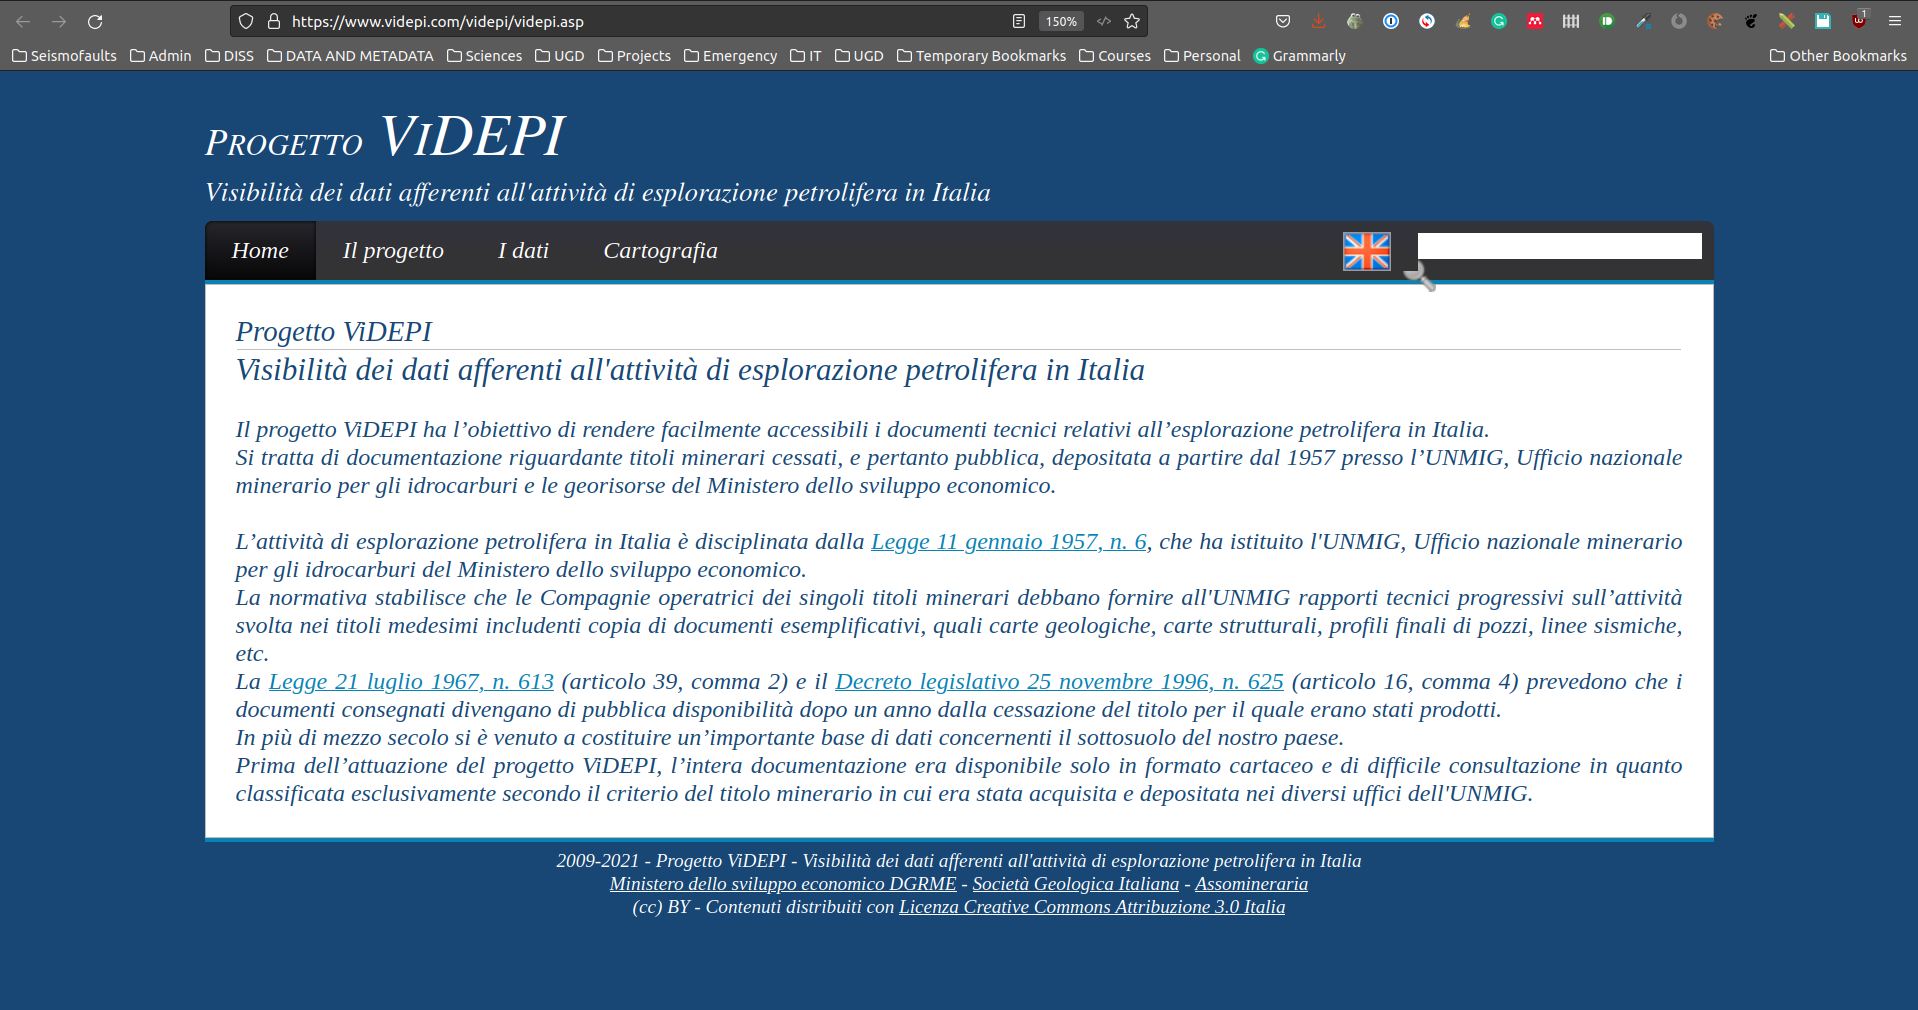 ViDEPI project website